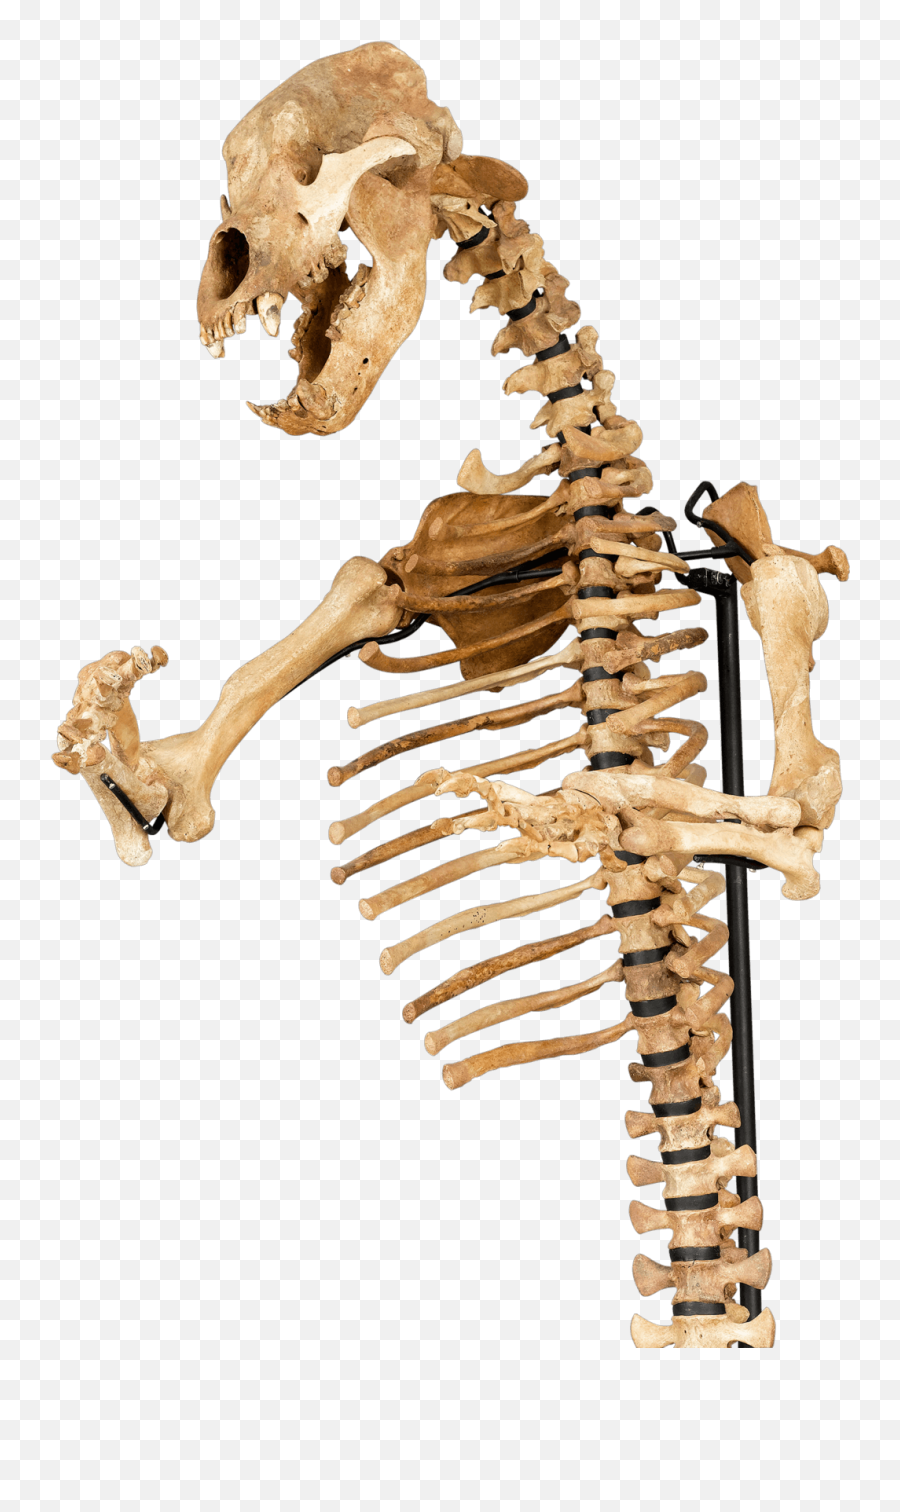 Bear bones. Скелет. Человеческий скелет. Кости человека.